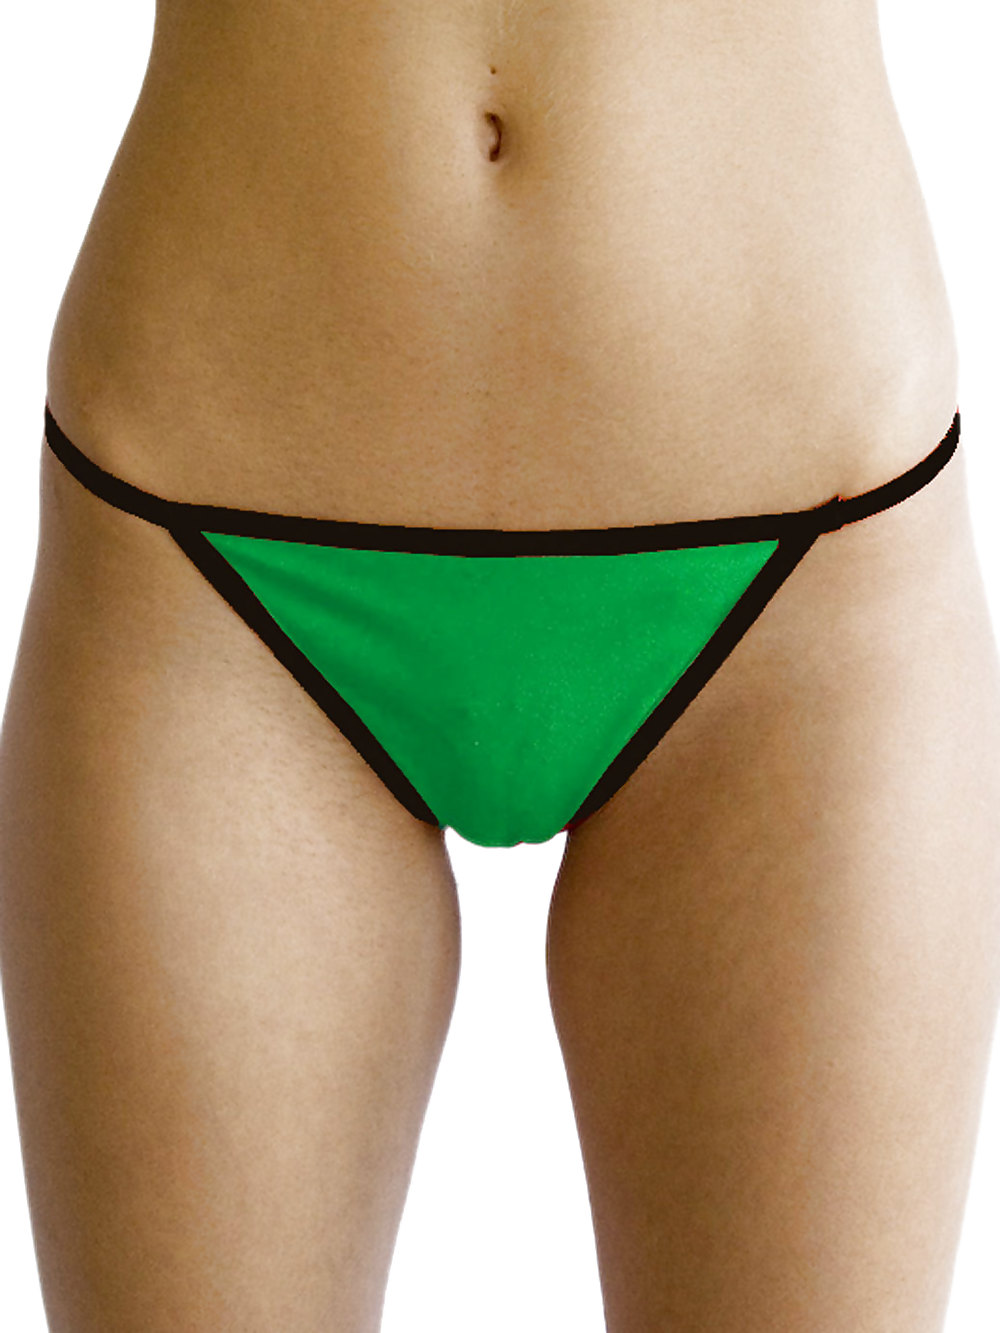 パンティー キャメルトゥ #rec bulges crotch spandex lingerie g1
 #6932186